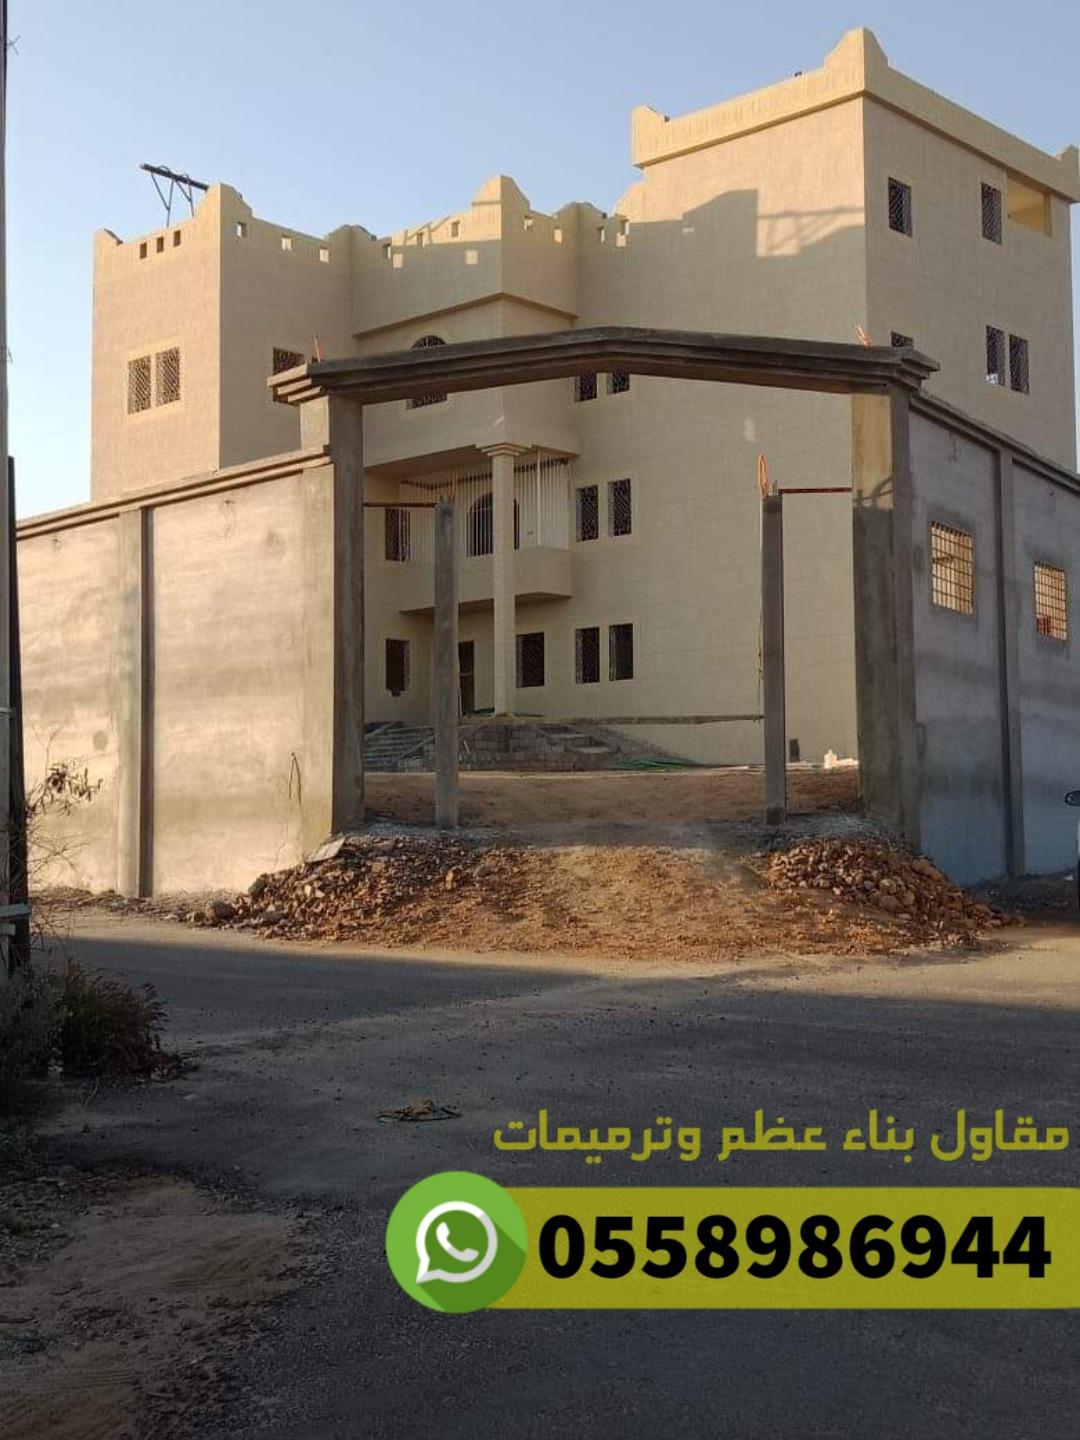 شركة مقاولات عامة معماري عظم في جدة, 0558986944